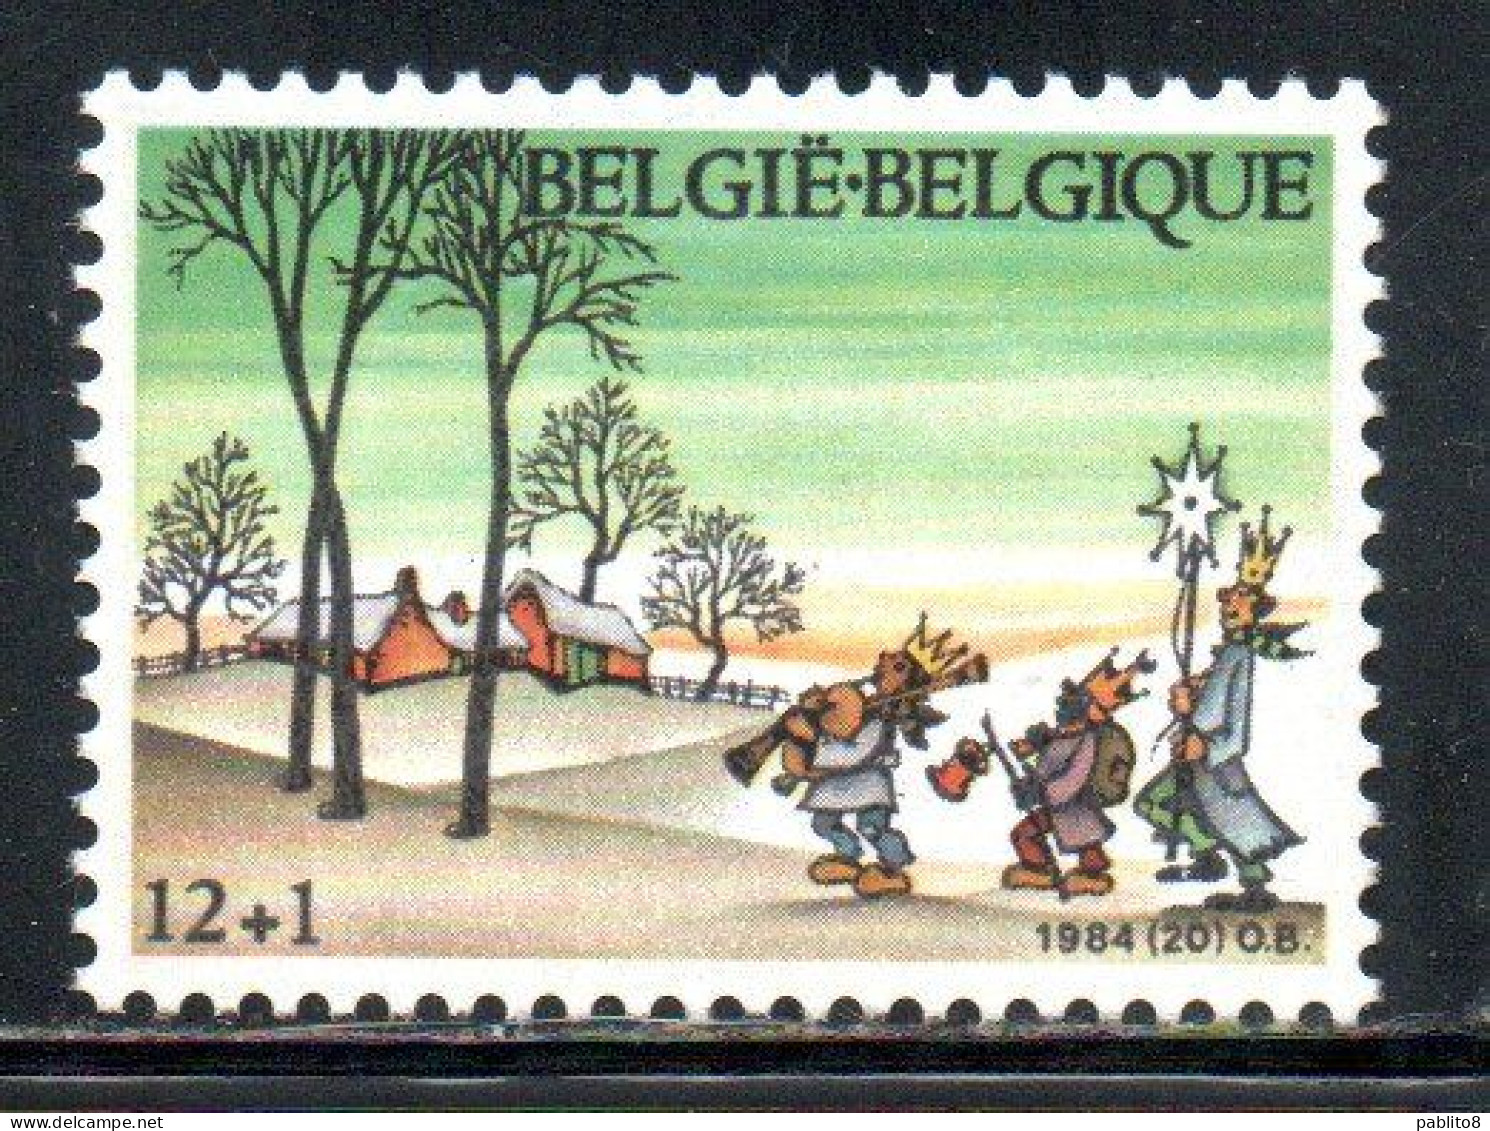 BELGIQUE BELGIE BELGIO BELGIUM 1984 CHRISTMAS NOEL NATALE WEIHNACHTEN NAVIDAD 12 + 1fr MNH - Unused Stamps